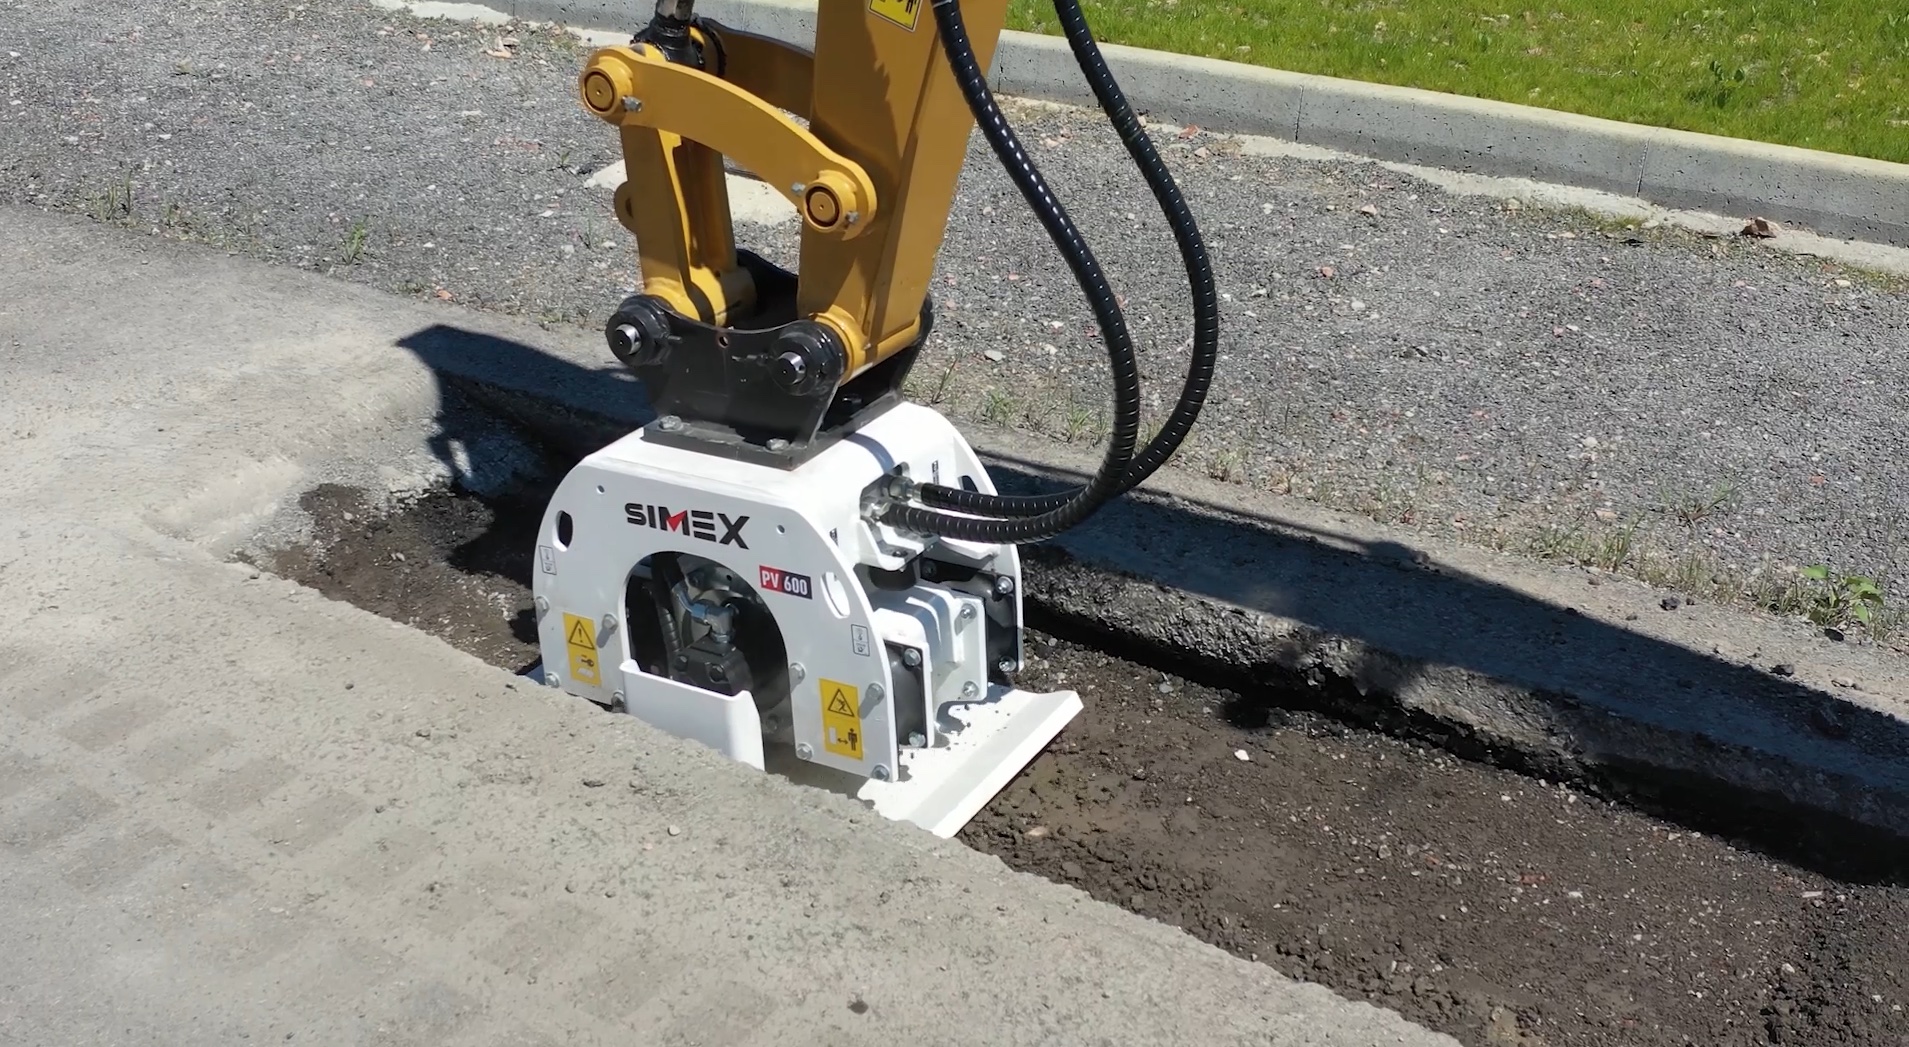 Simex PV600 Anbauverdichter für Bagger im Einsatz bei der Verdichtung des Unterbodens einer Straße